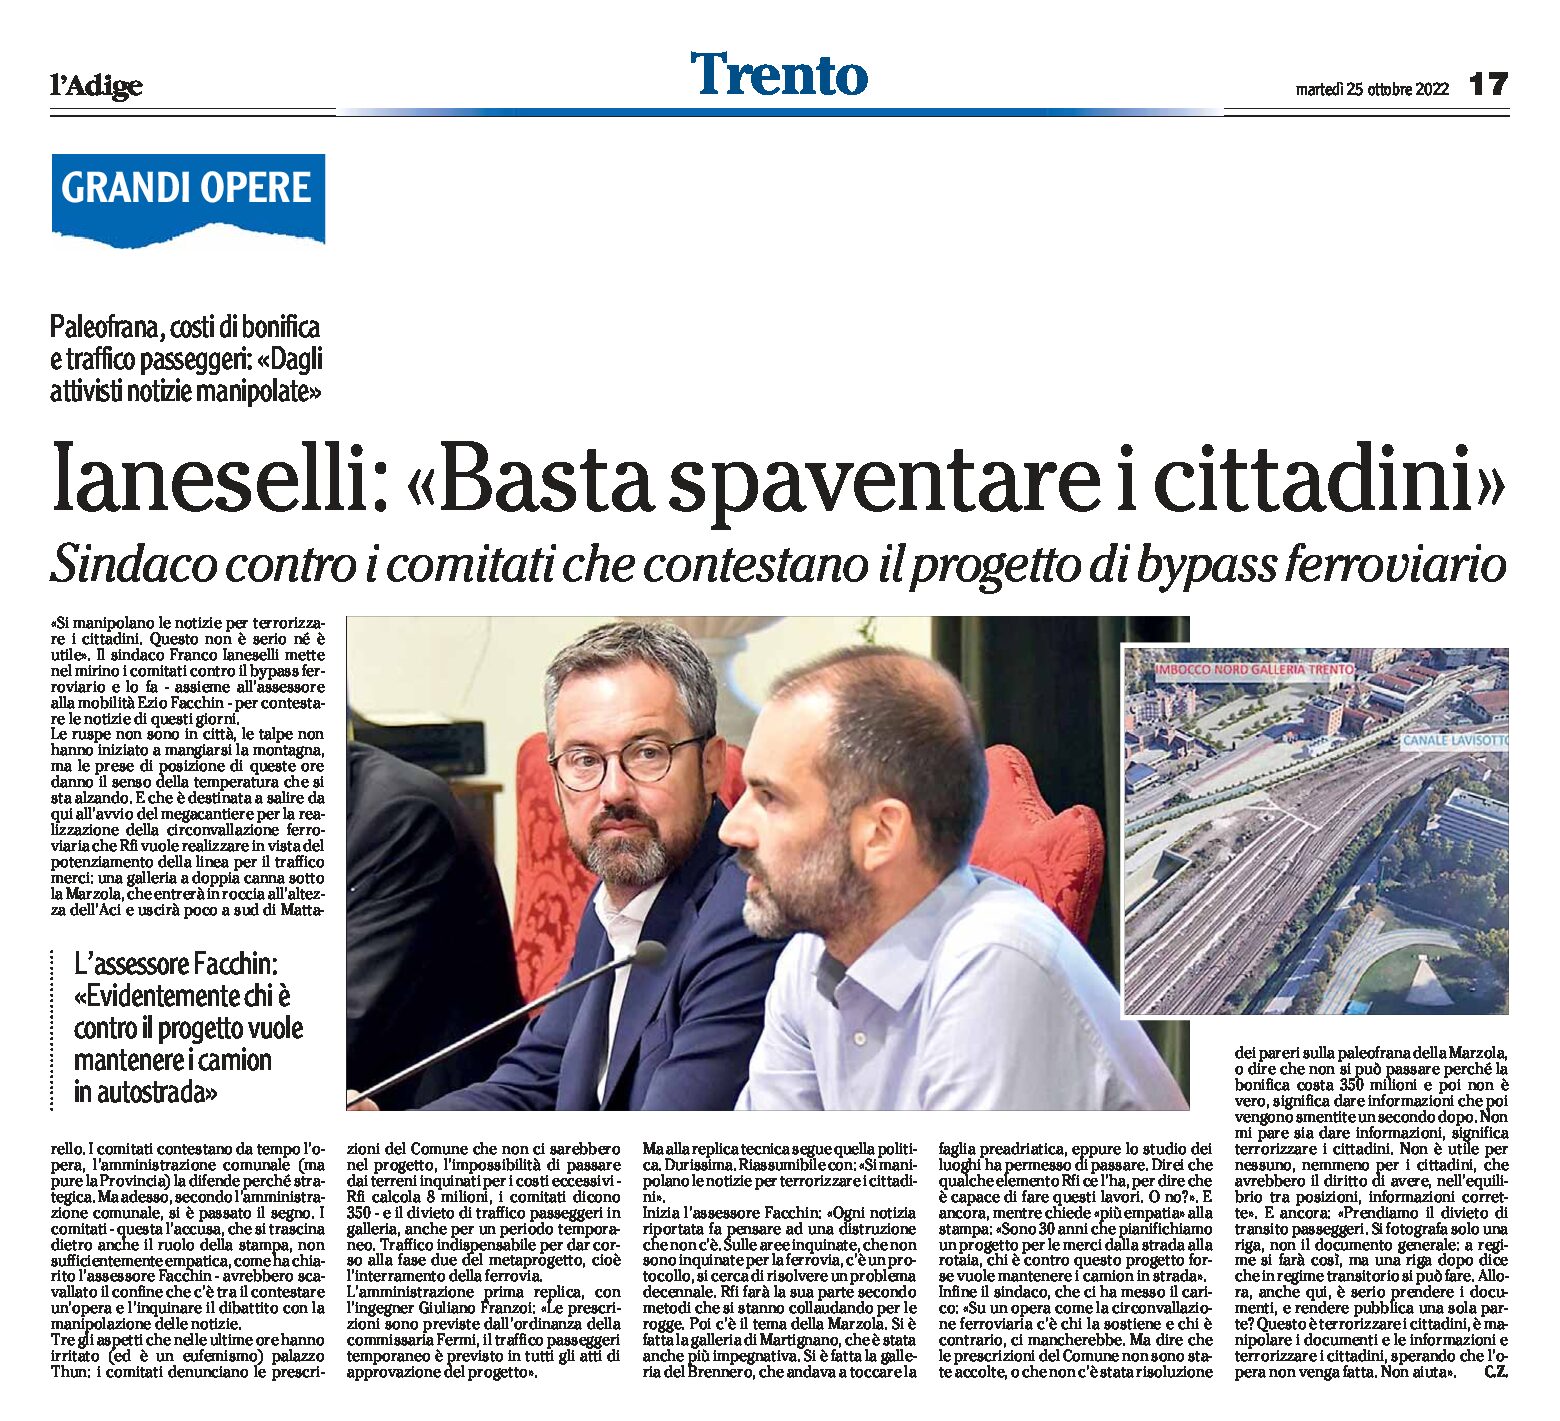 Trento, bypass: Ianeselli contro i comitati che contestano il progetto “basta spaventare i cittadini”